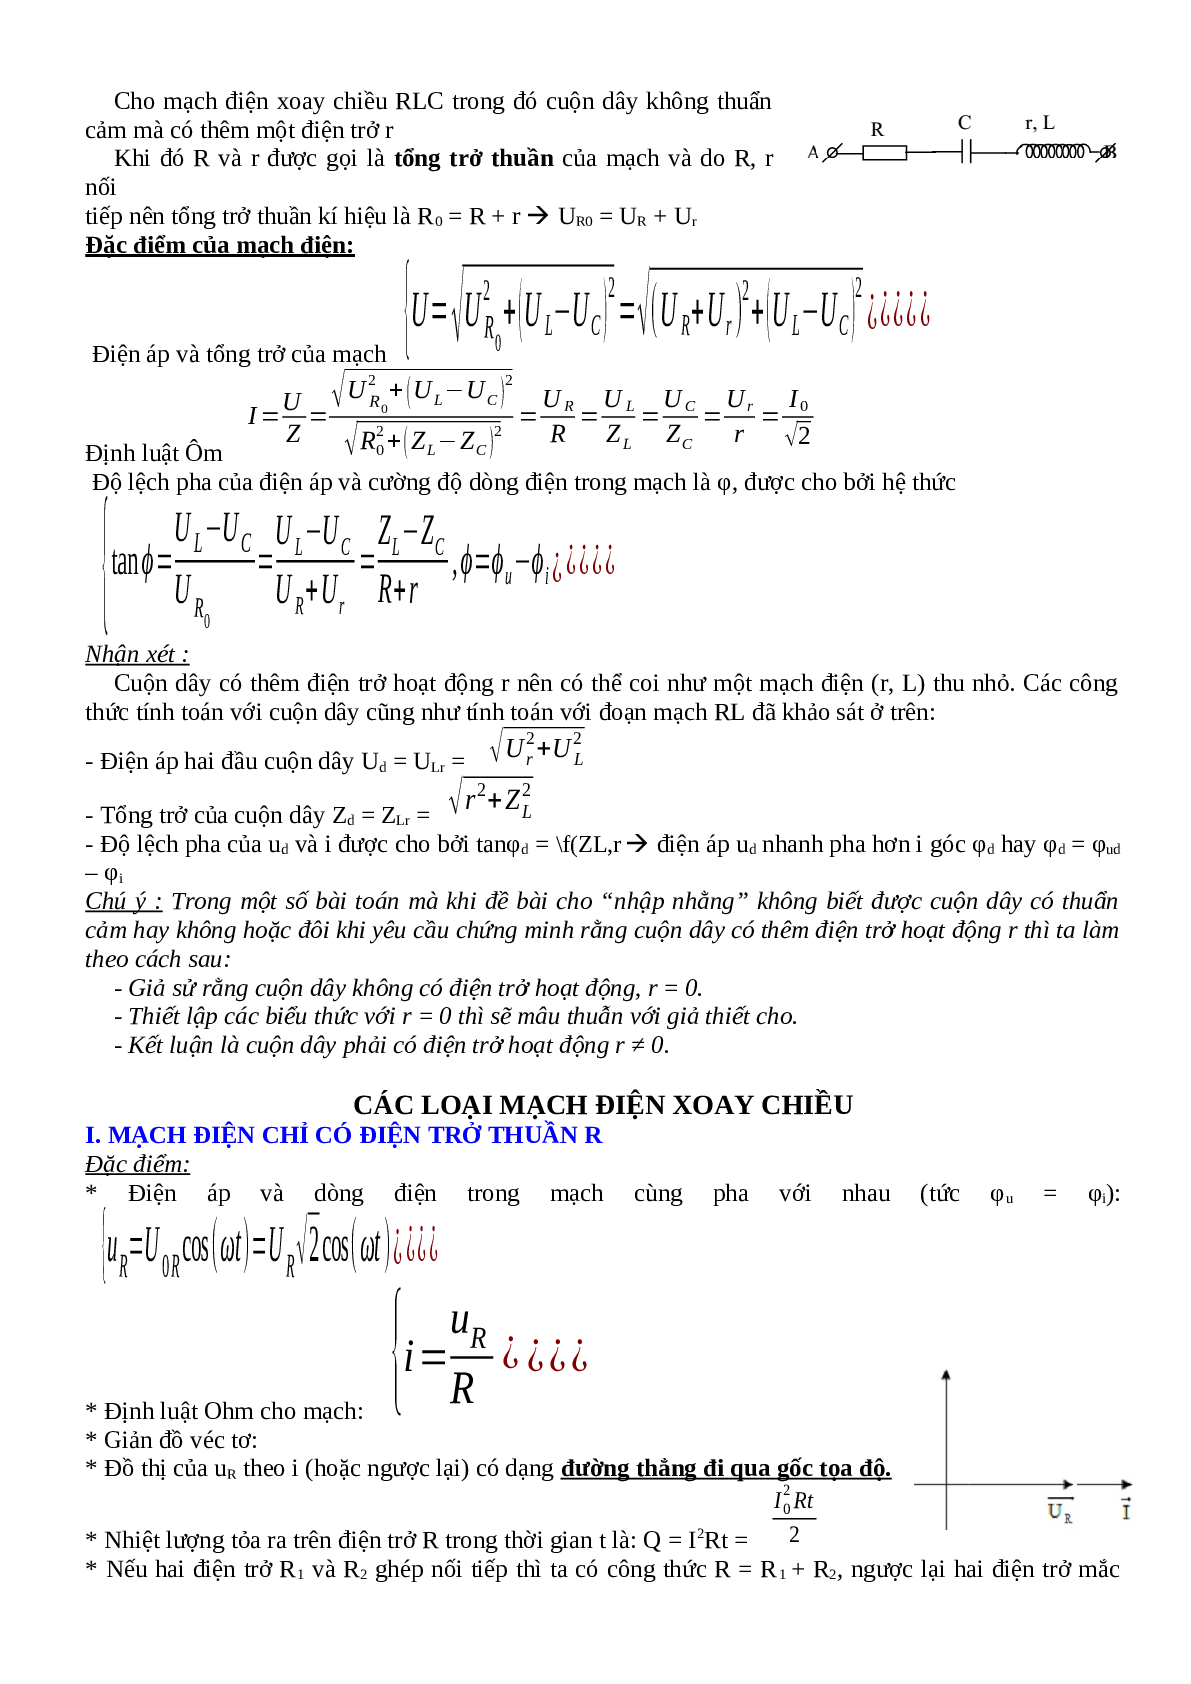 Lý thuyết, bài tập về Điện xoay chiều hay nhất - Vật lí 12 (trang 5)